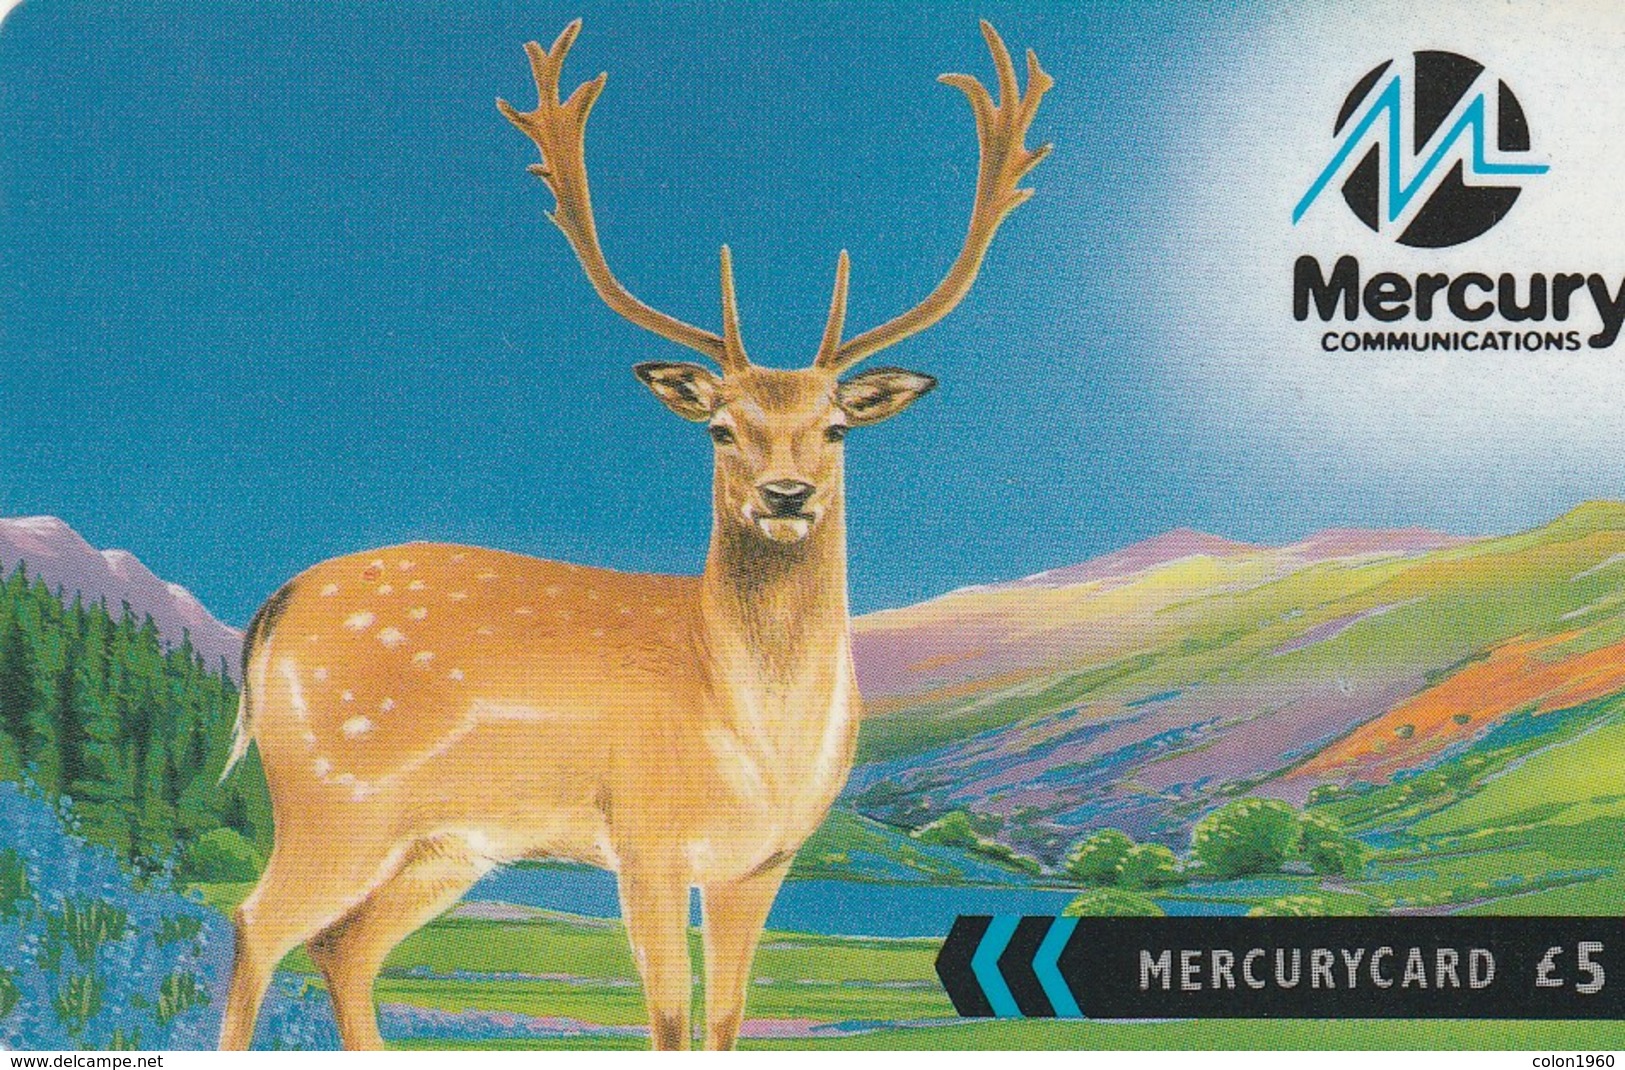 REINO UNIDO. British Wildlife. Fallow Deer (Mercury One2One) 41MERC. MER568. (005) - [ 4] Mercury Communications & Paytelco